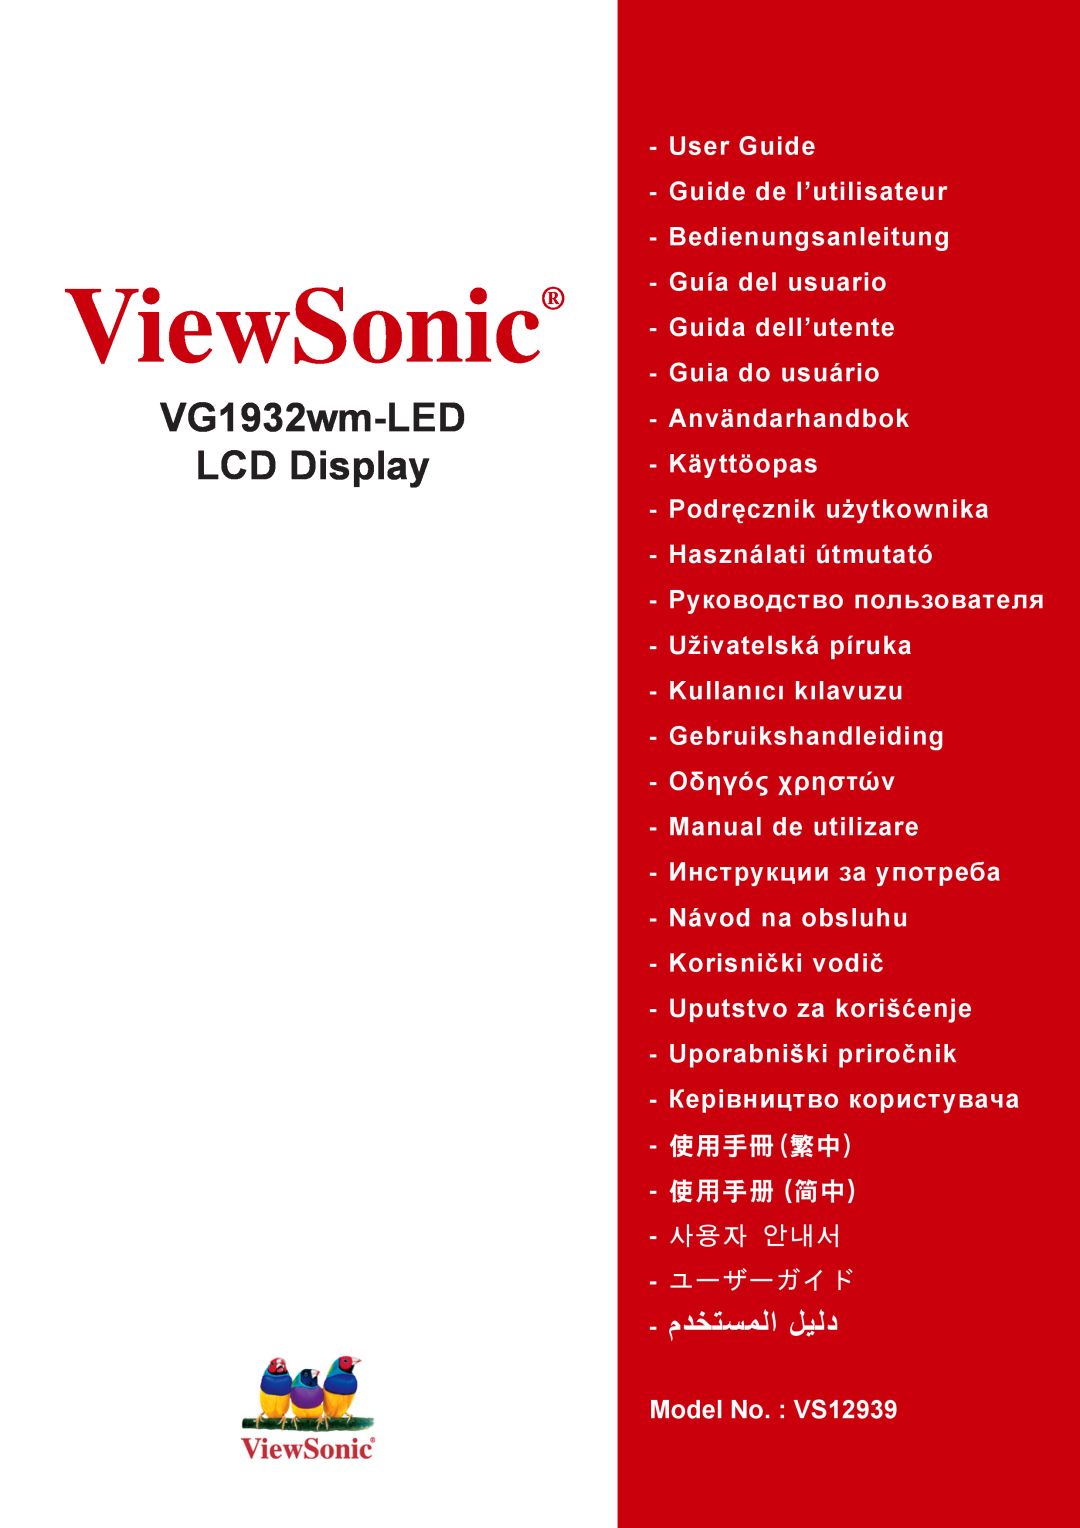 ViewSonic VG1932WM-LED warranty ViewSonic, VG1932wm-LED LCD Display, Model No. VS12939 